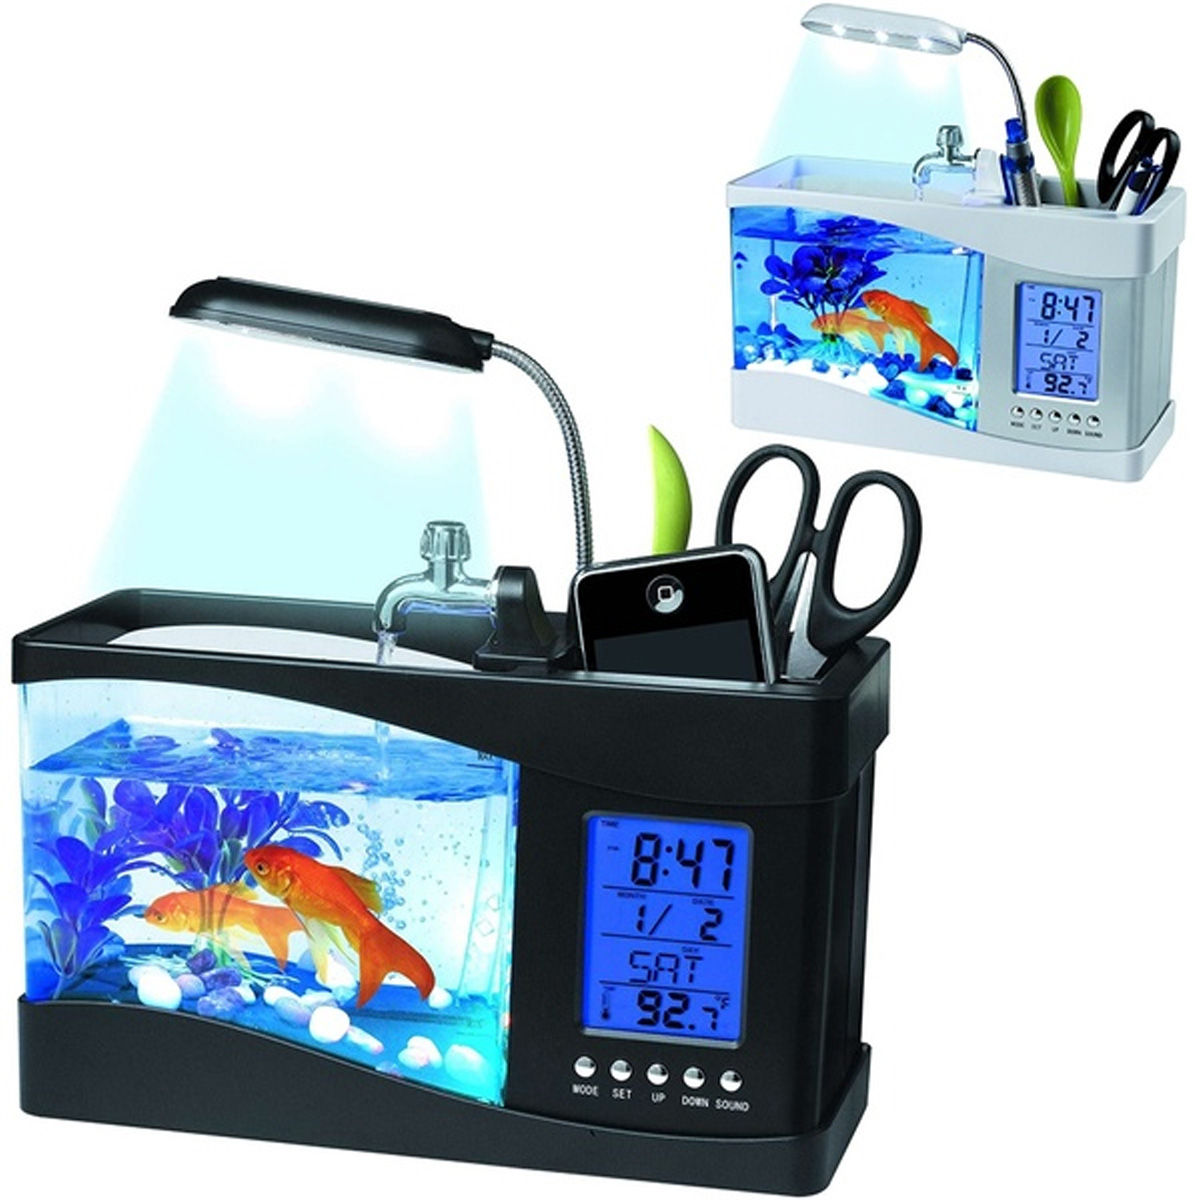 

Small Aquarium Mini Fish Tank Goldfish Bowl Lamp Thermometer Alarm Clock LED Light